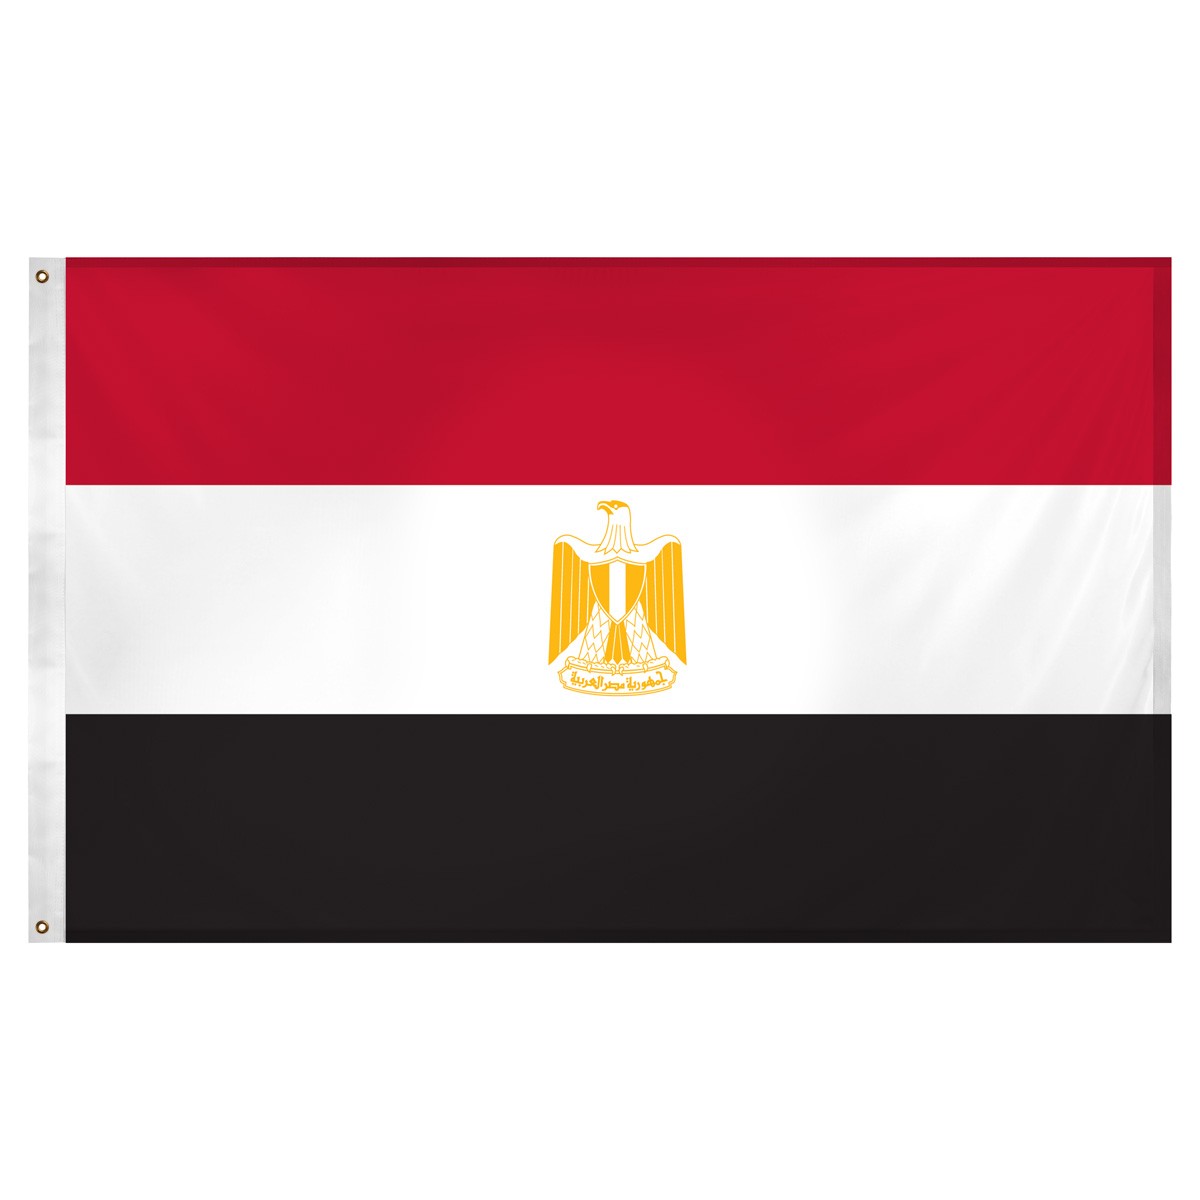 Egypt Beach Flag and Sailing Flag